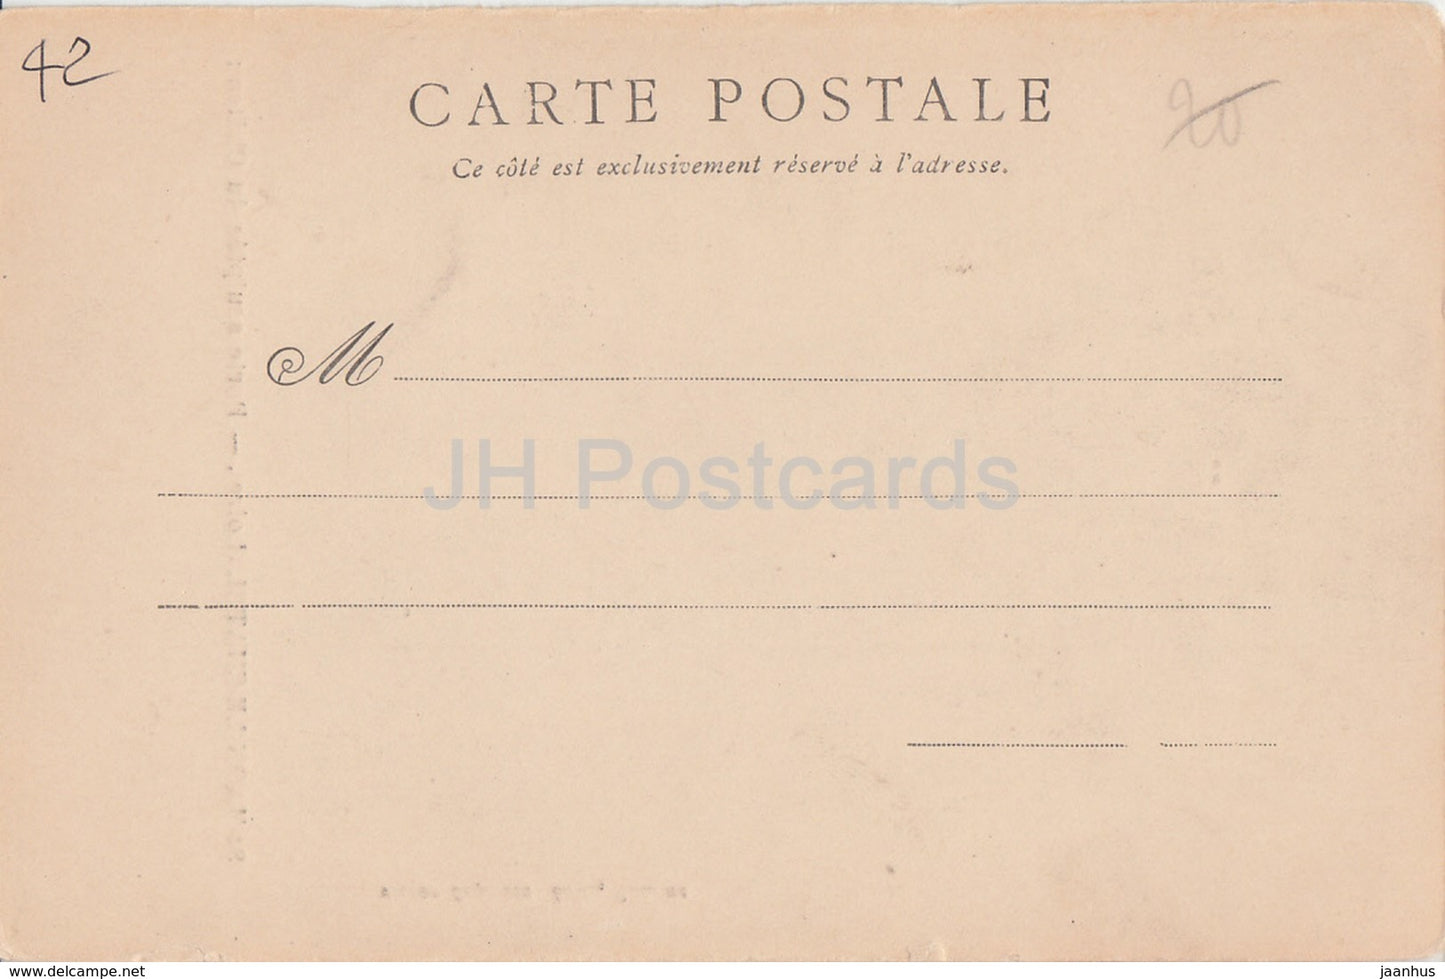 St. Haon Le Chatel - Porte sculptee du Chateau - Schloss - alte Postkarte - Frankreich - unbenutzt